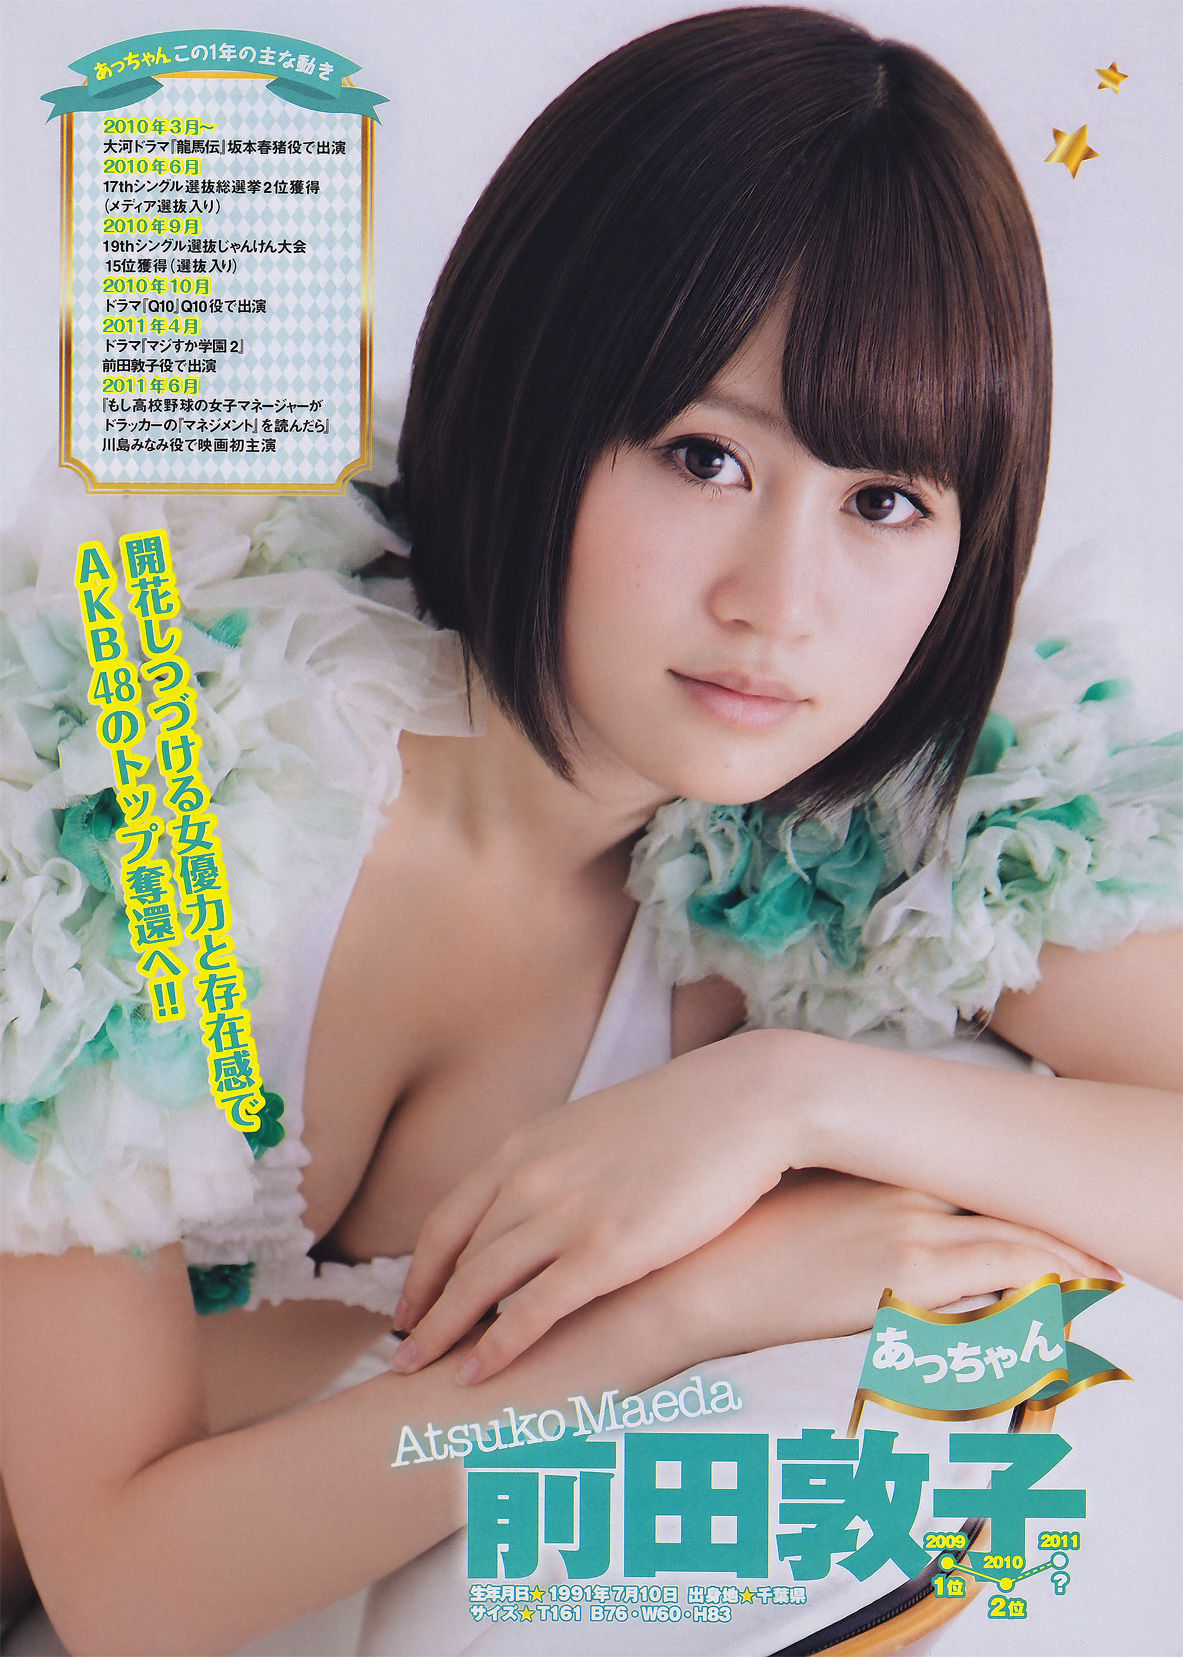 [Young Magazine]杂志:AKB48无圣光私房照片在线浏览(15P)